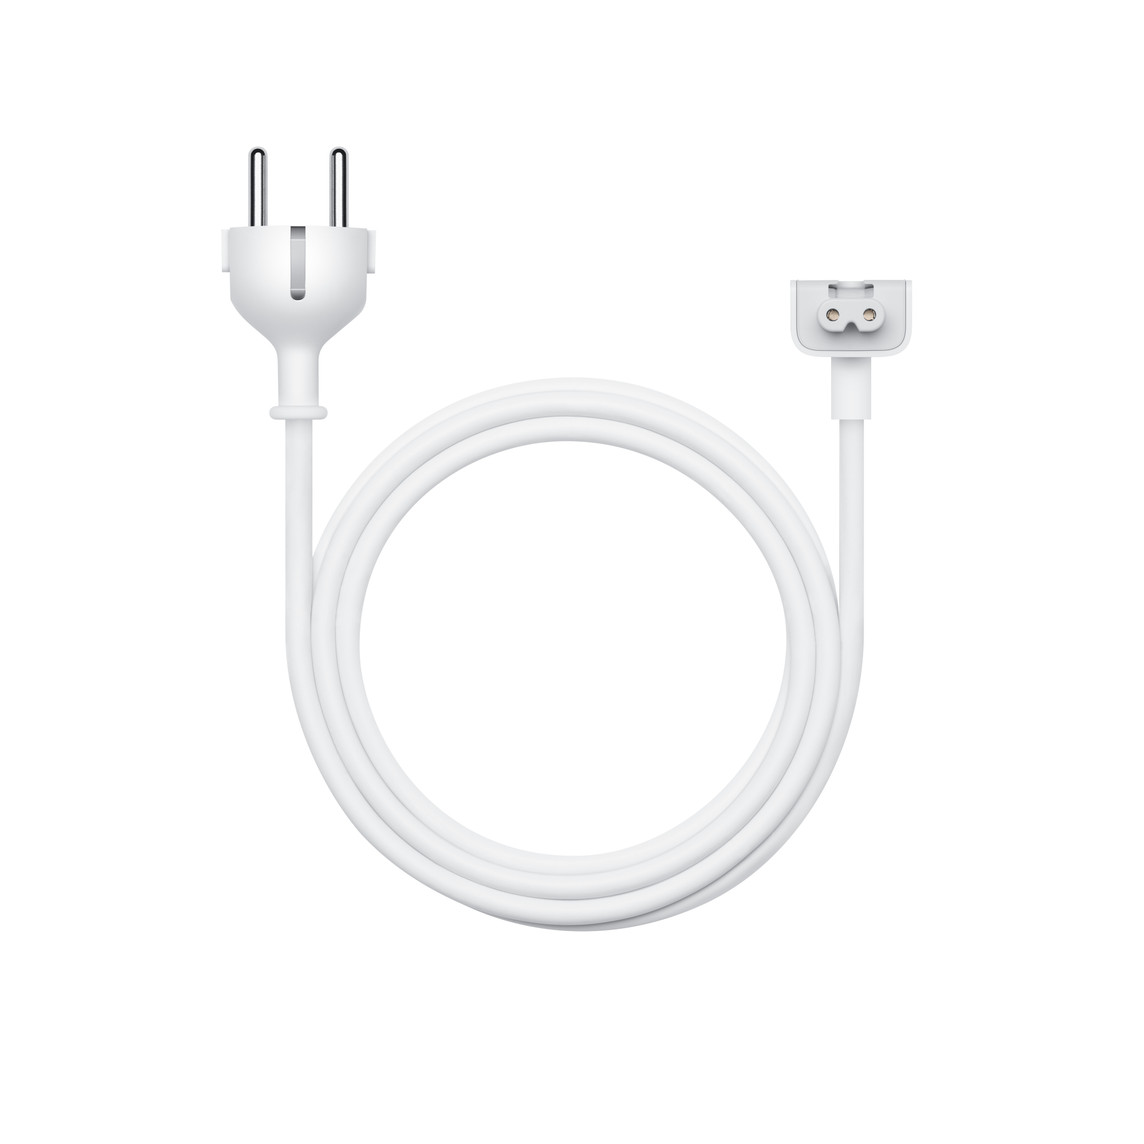 Cáp Nối Dài 1,8m cho Bộ Tiếp Hợp Nguồn là dây nối AC được dùng để tăng độ dài cho bộ tiếp hợp nguồn Apple.